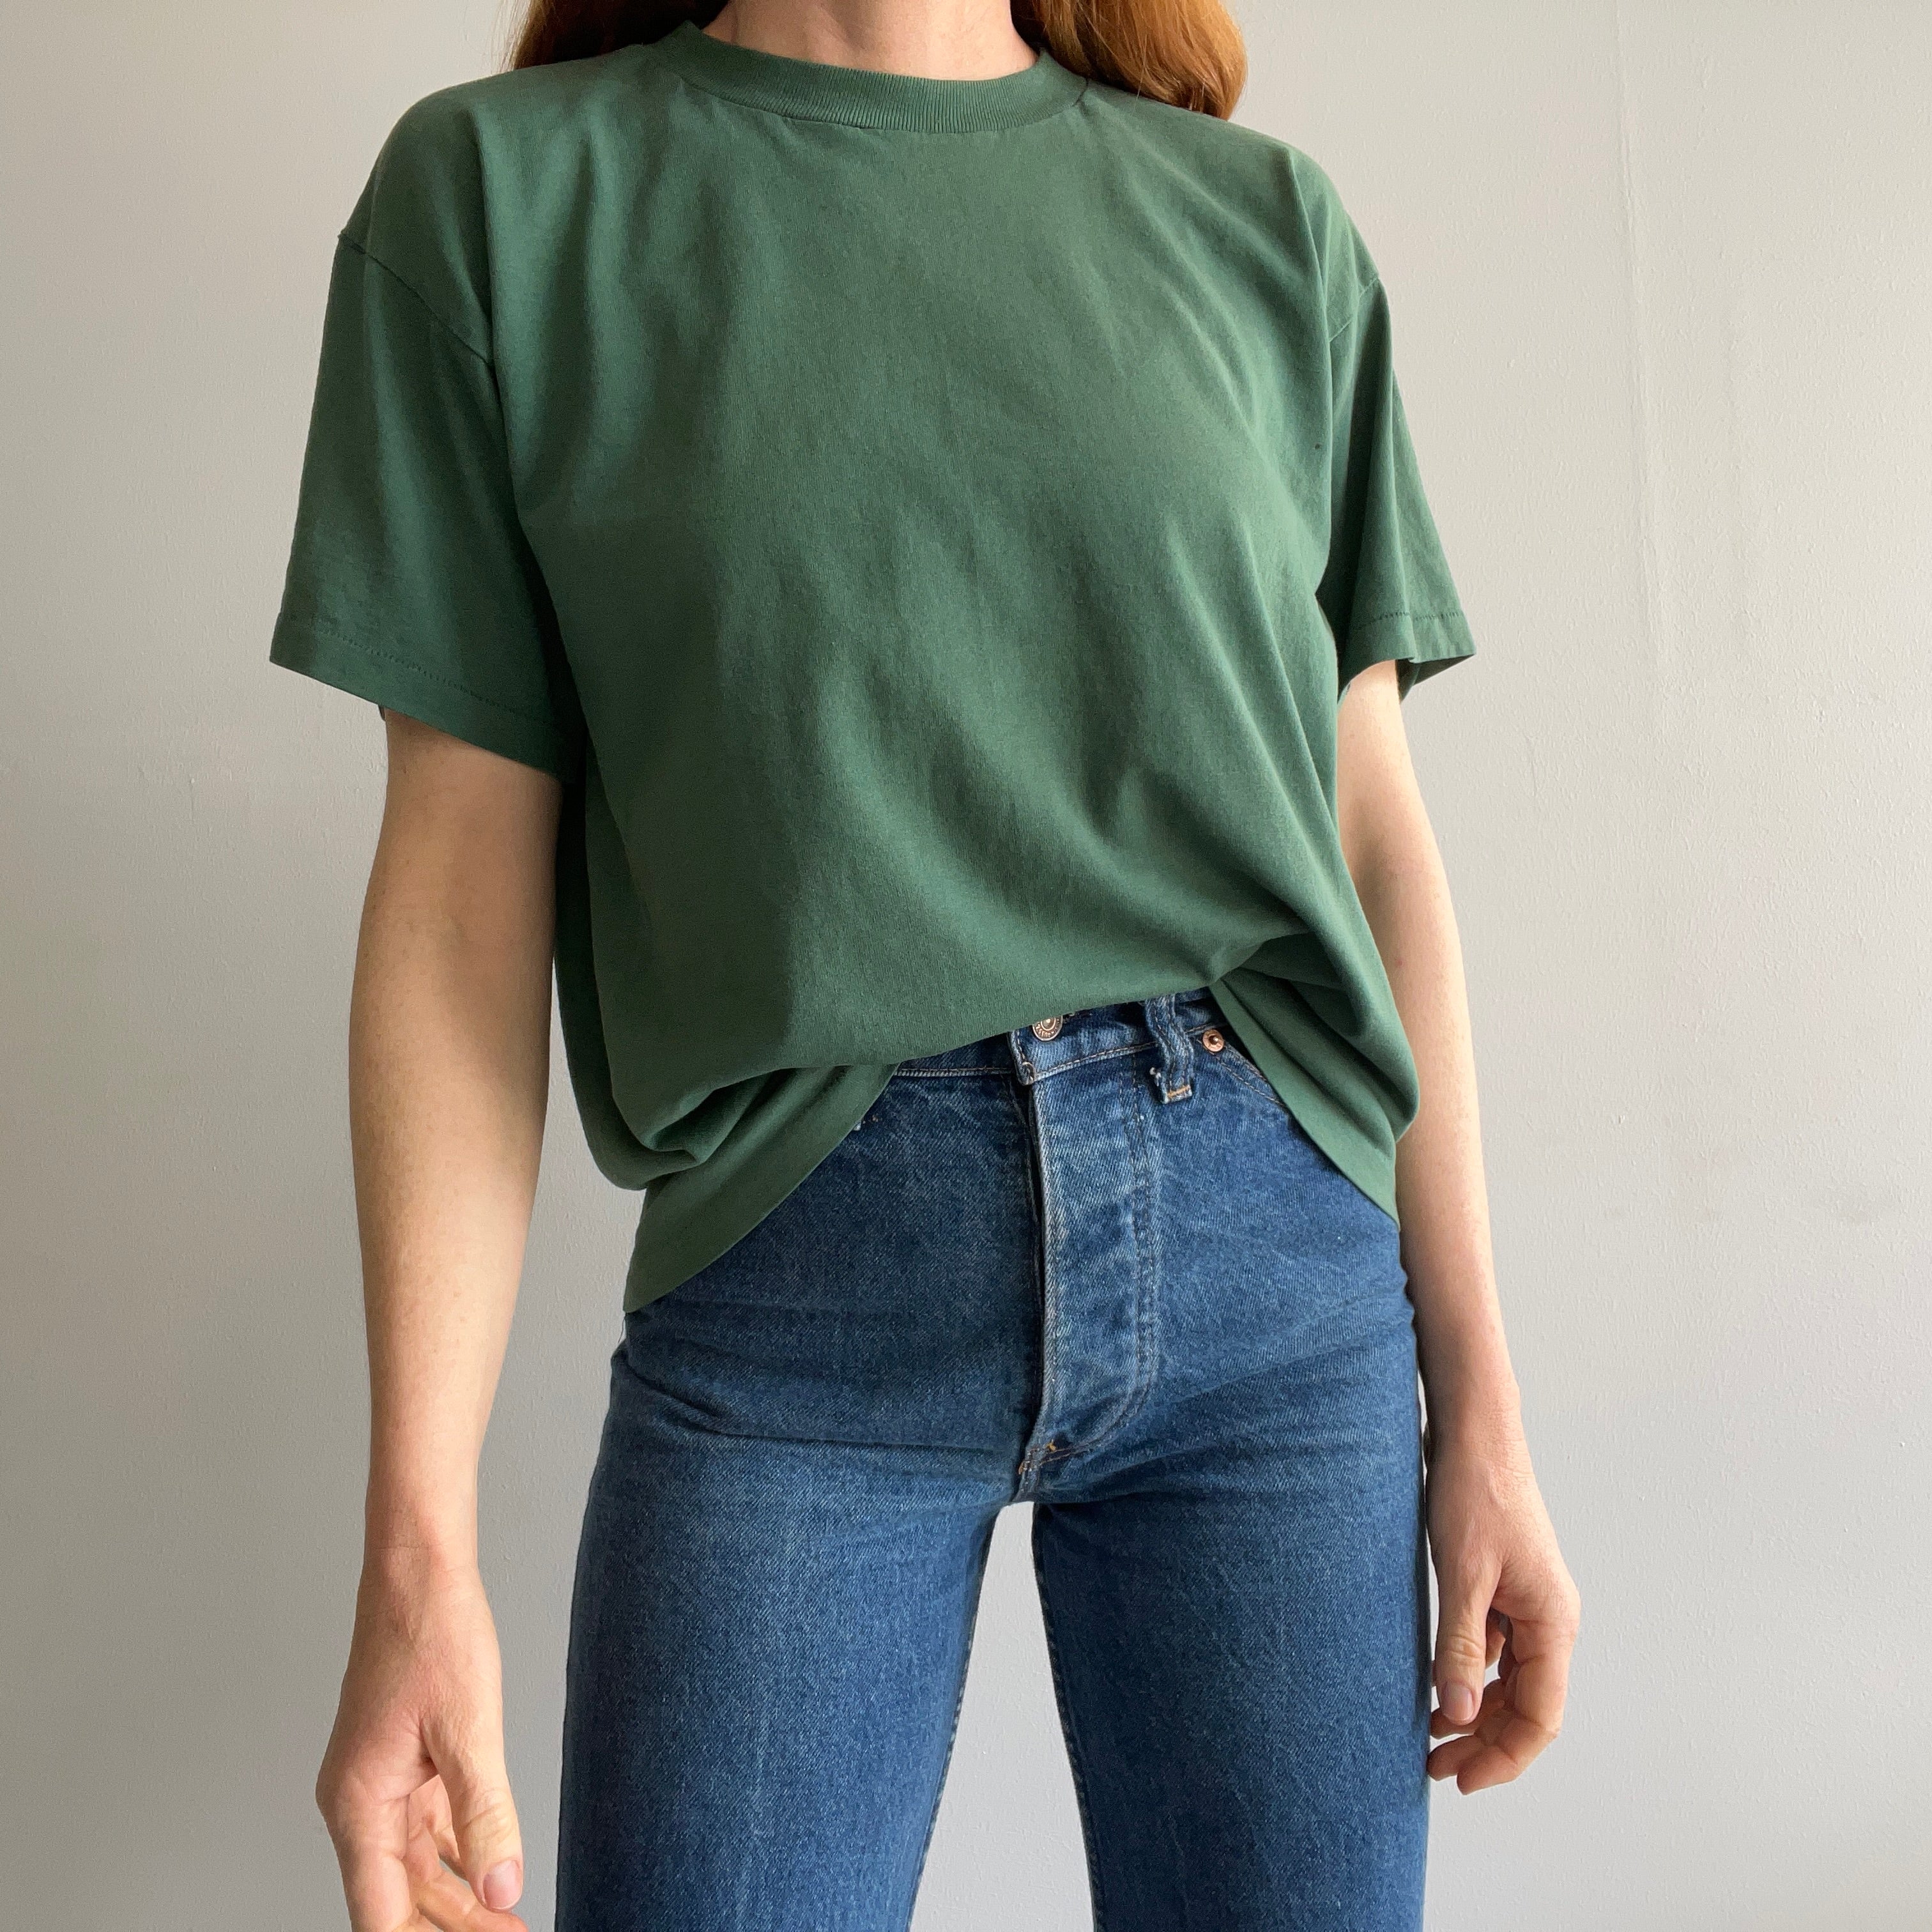 T-shirt en coton vert foncé vierge des années 1980